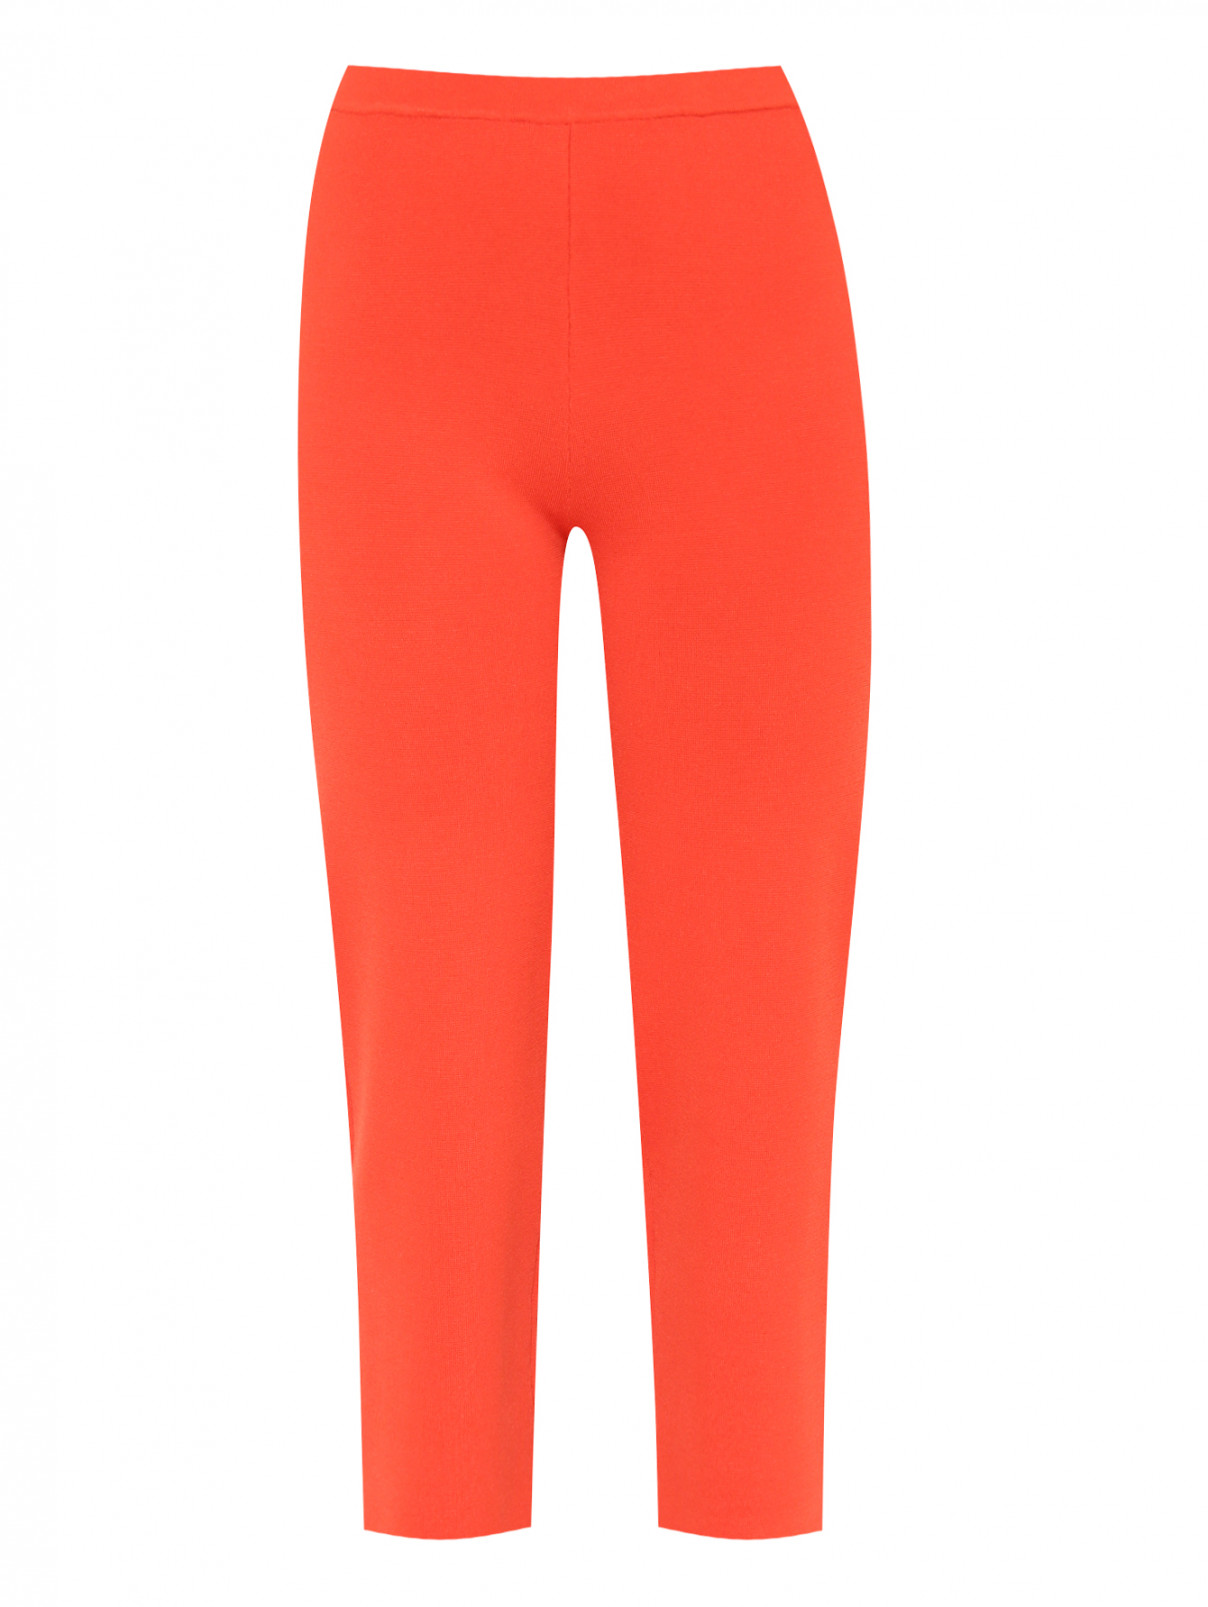 Укороченные брюки из плотного трикотажа на резинке Marina Rinaldi  –  Общий вид  – Цвет:  Оранжевый